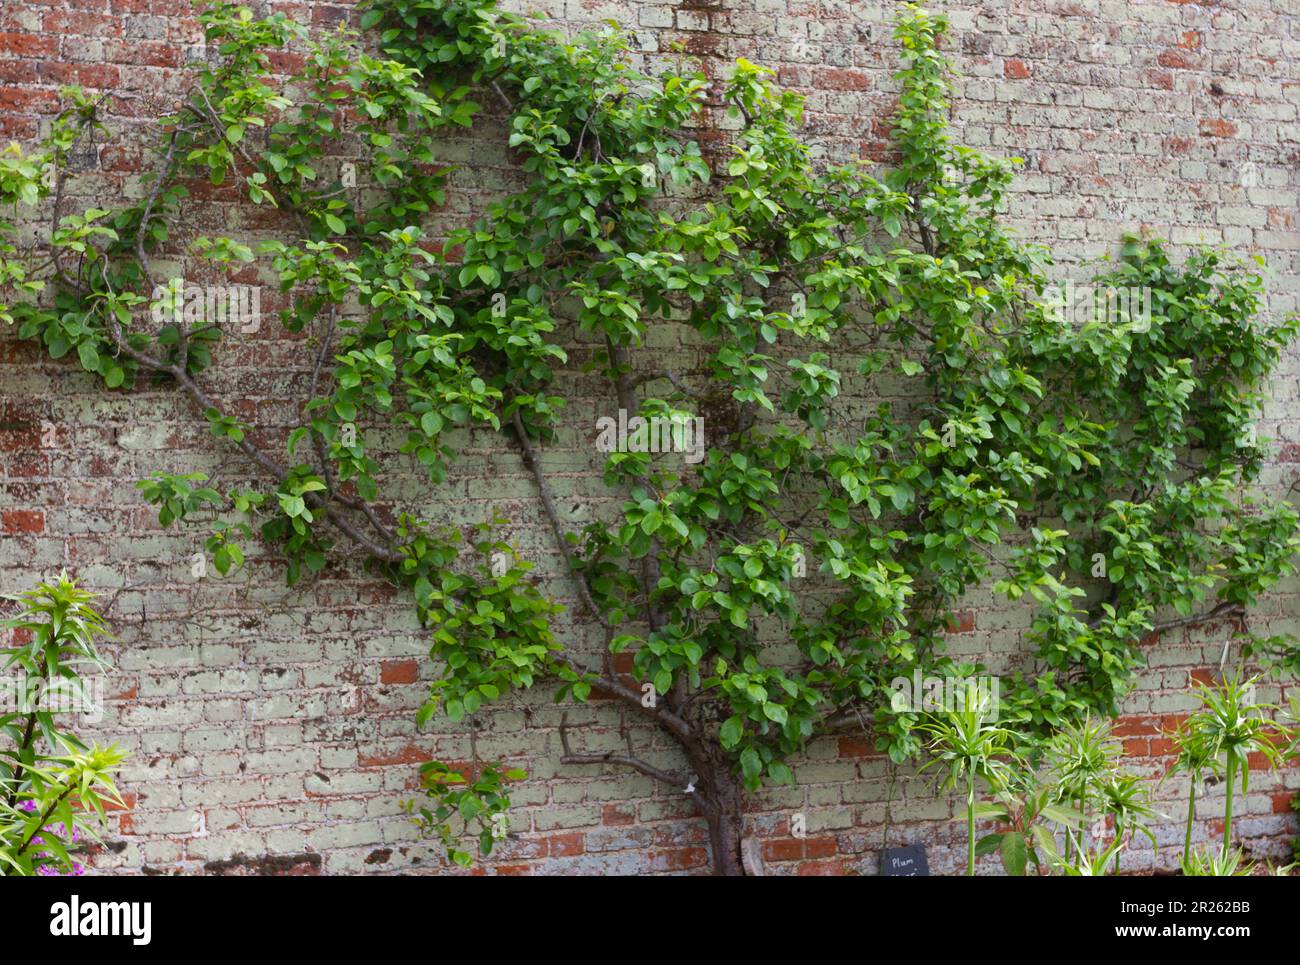 Árbol de ciruela Espaliered ' zar' que crece hasta un viejo muro de jardín. Helen Cowles/ Alamy Foto de stock